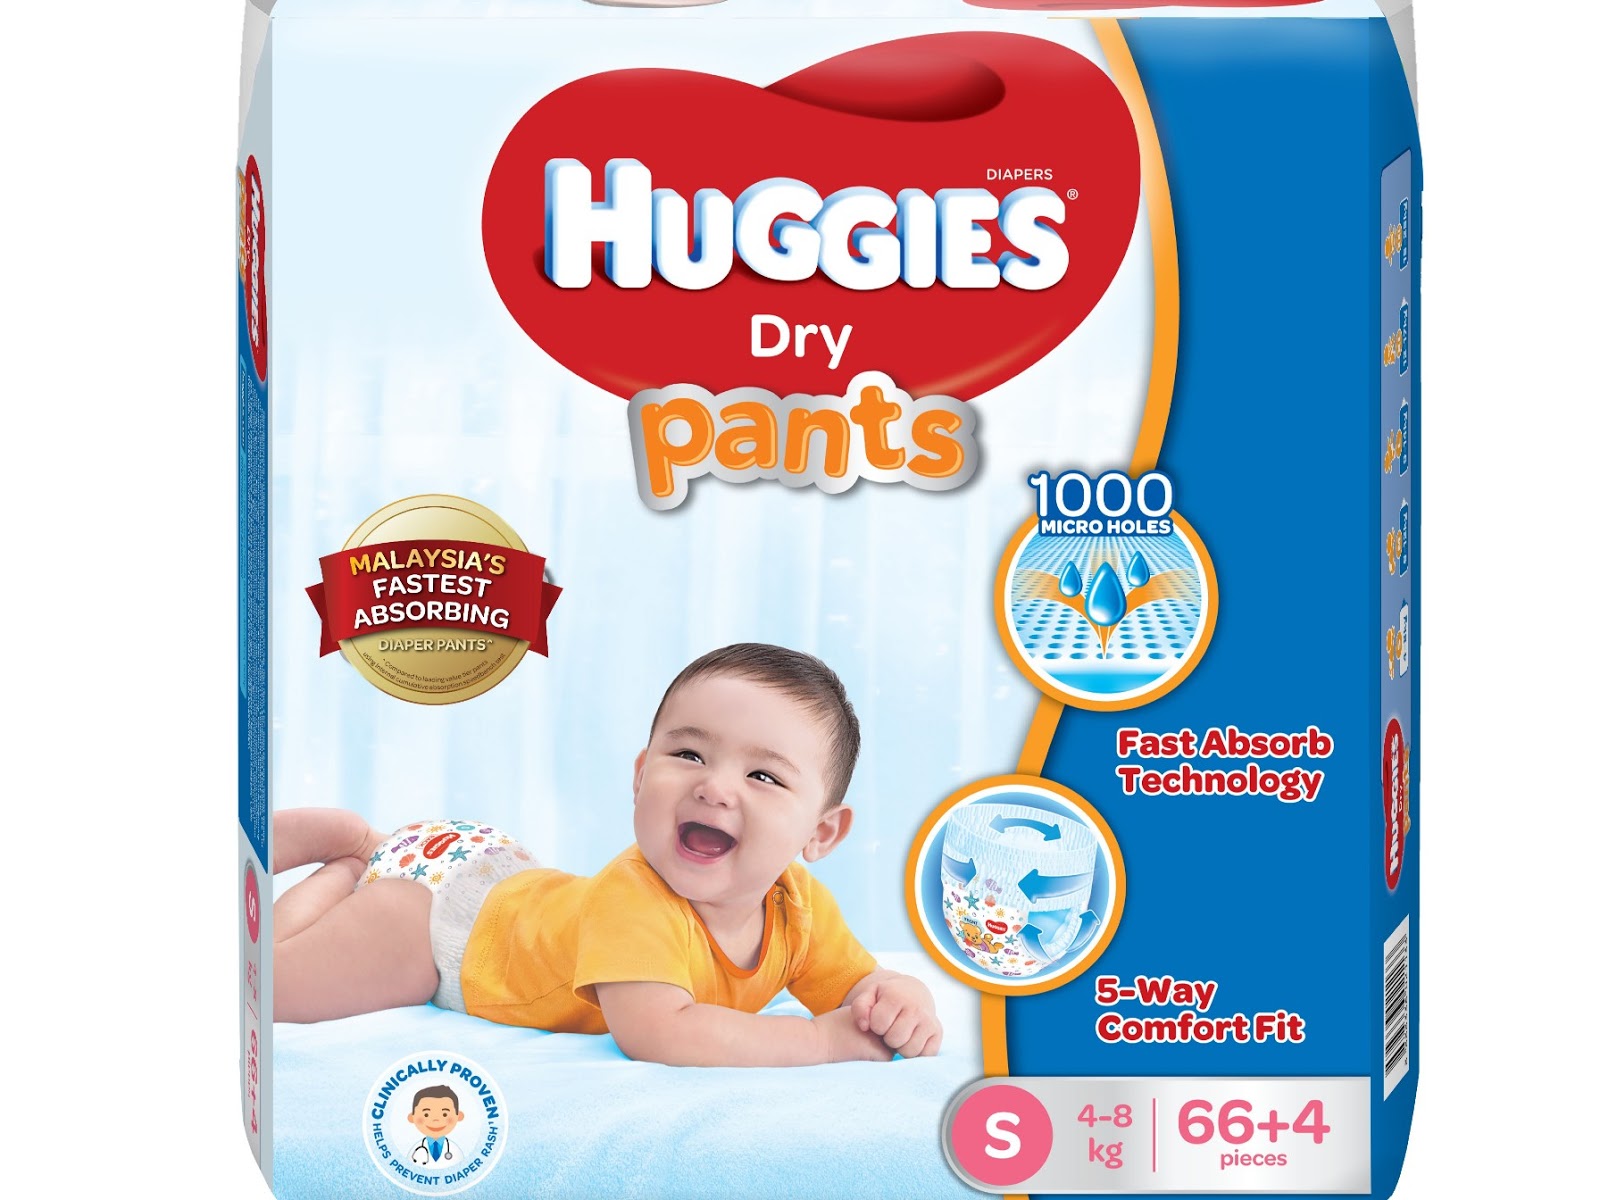 Huggies Dry Pants